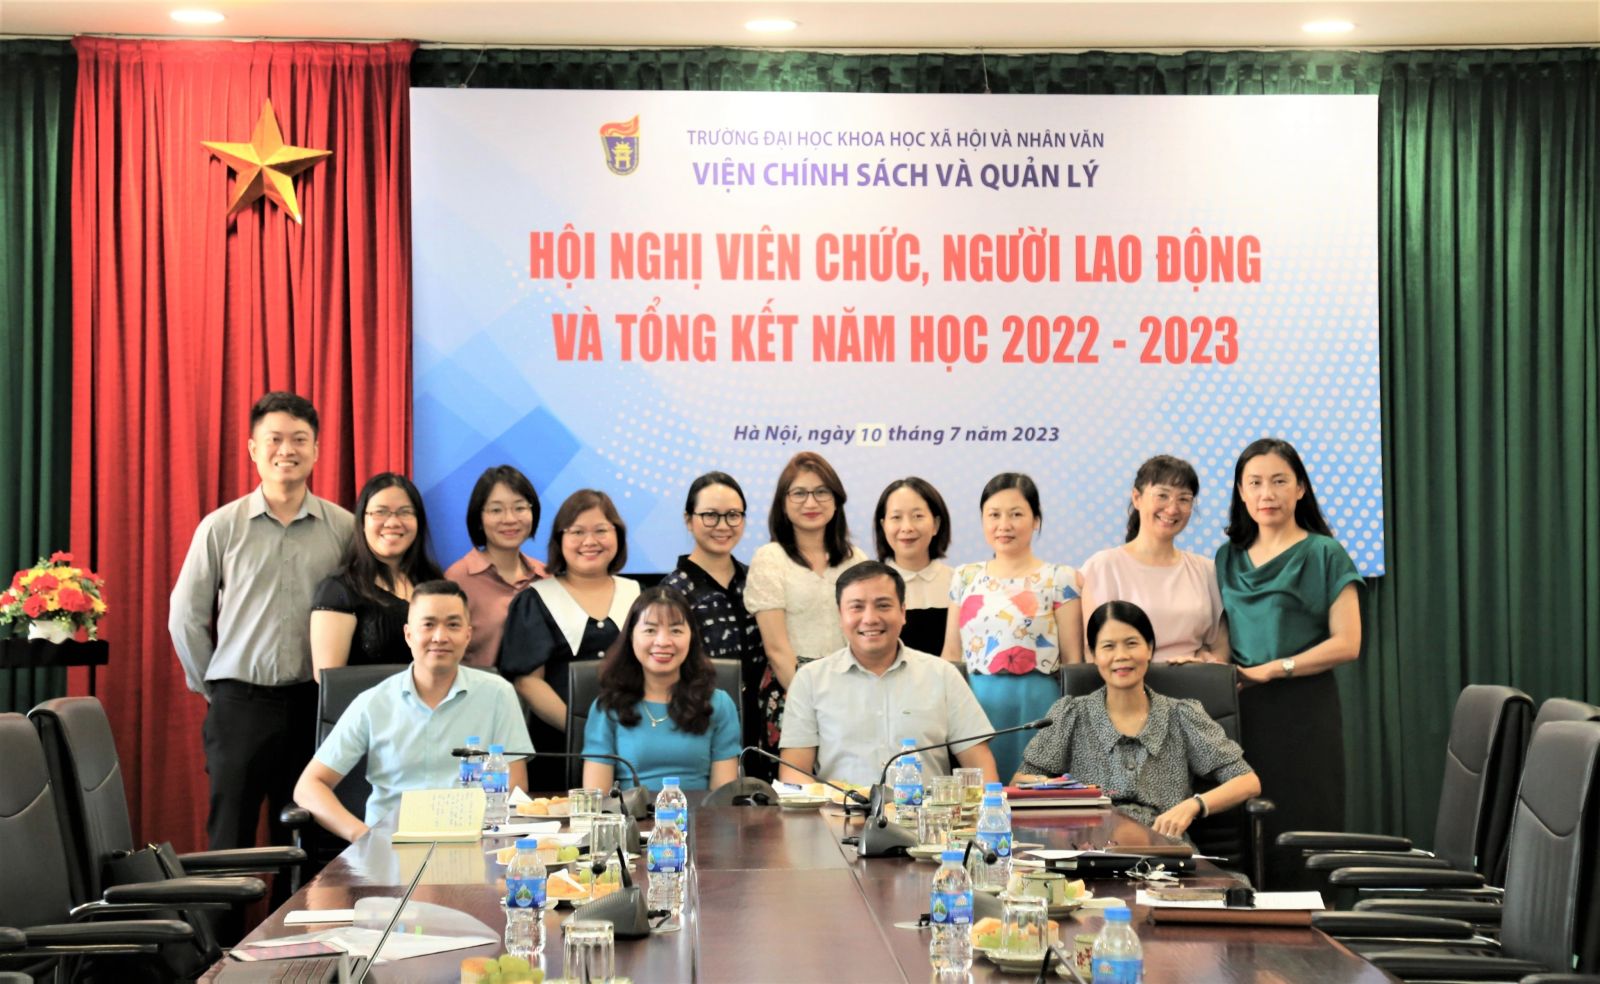 Hội nghị viên chức, người lao động và tổng kết năm học 2022-2023 của Viện Chính sách và Quản lý